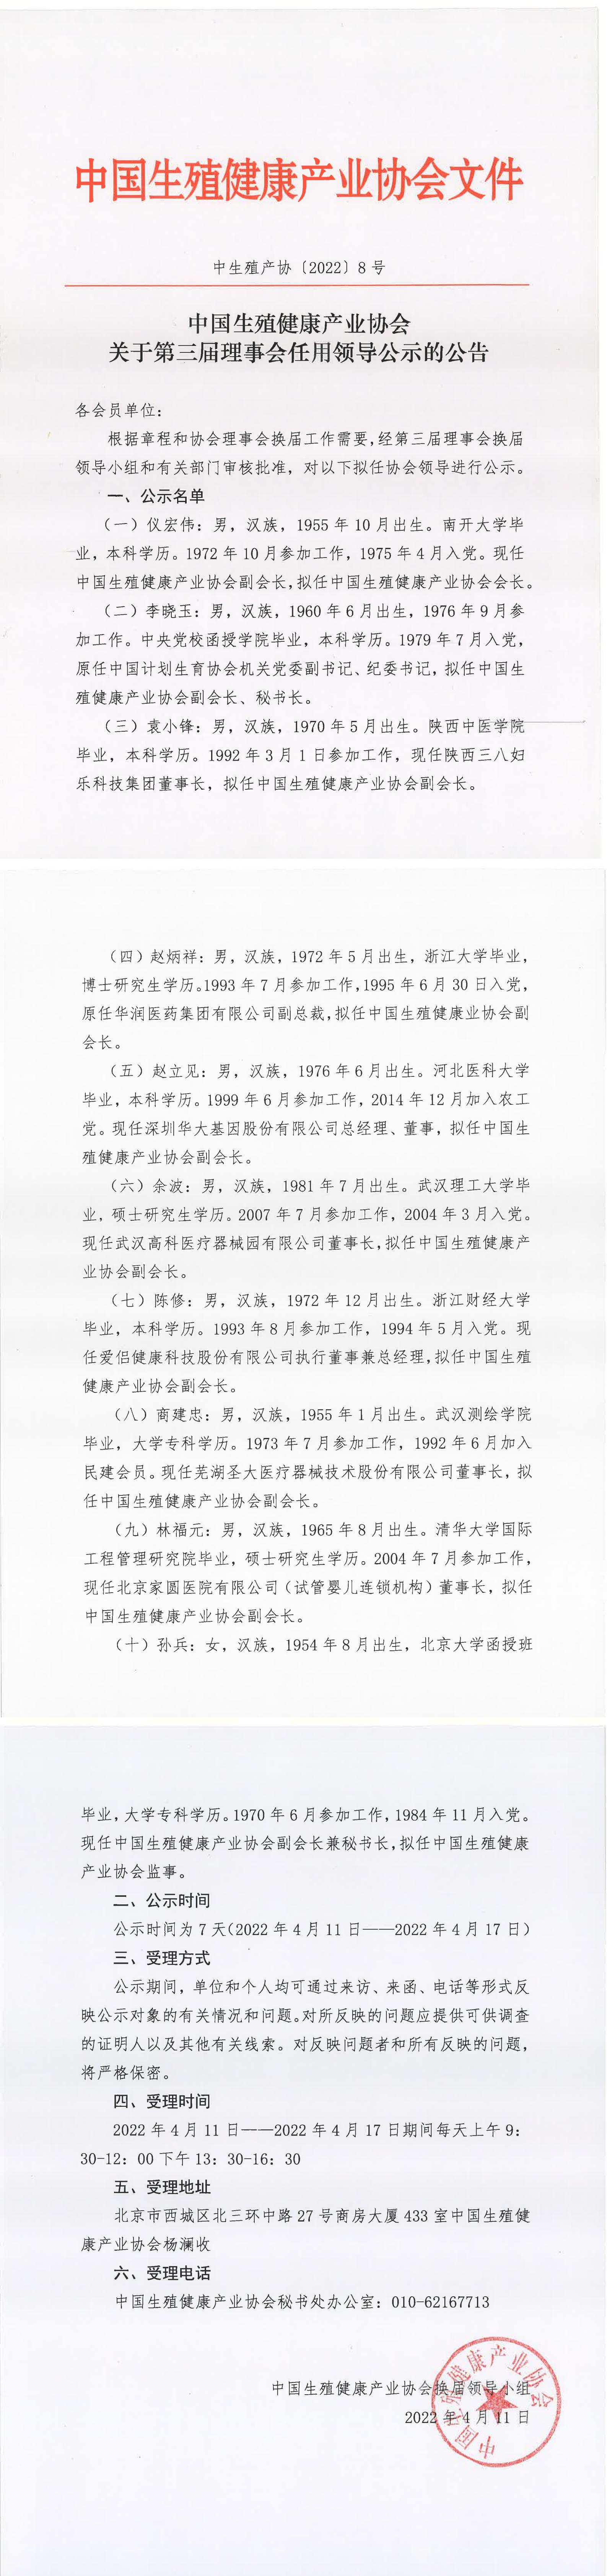 中國生殖健康產業協會關于第三屆理事會擬任領導的公示